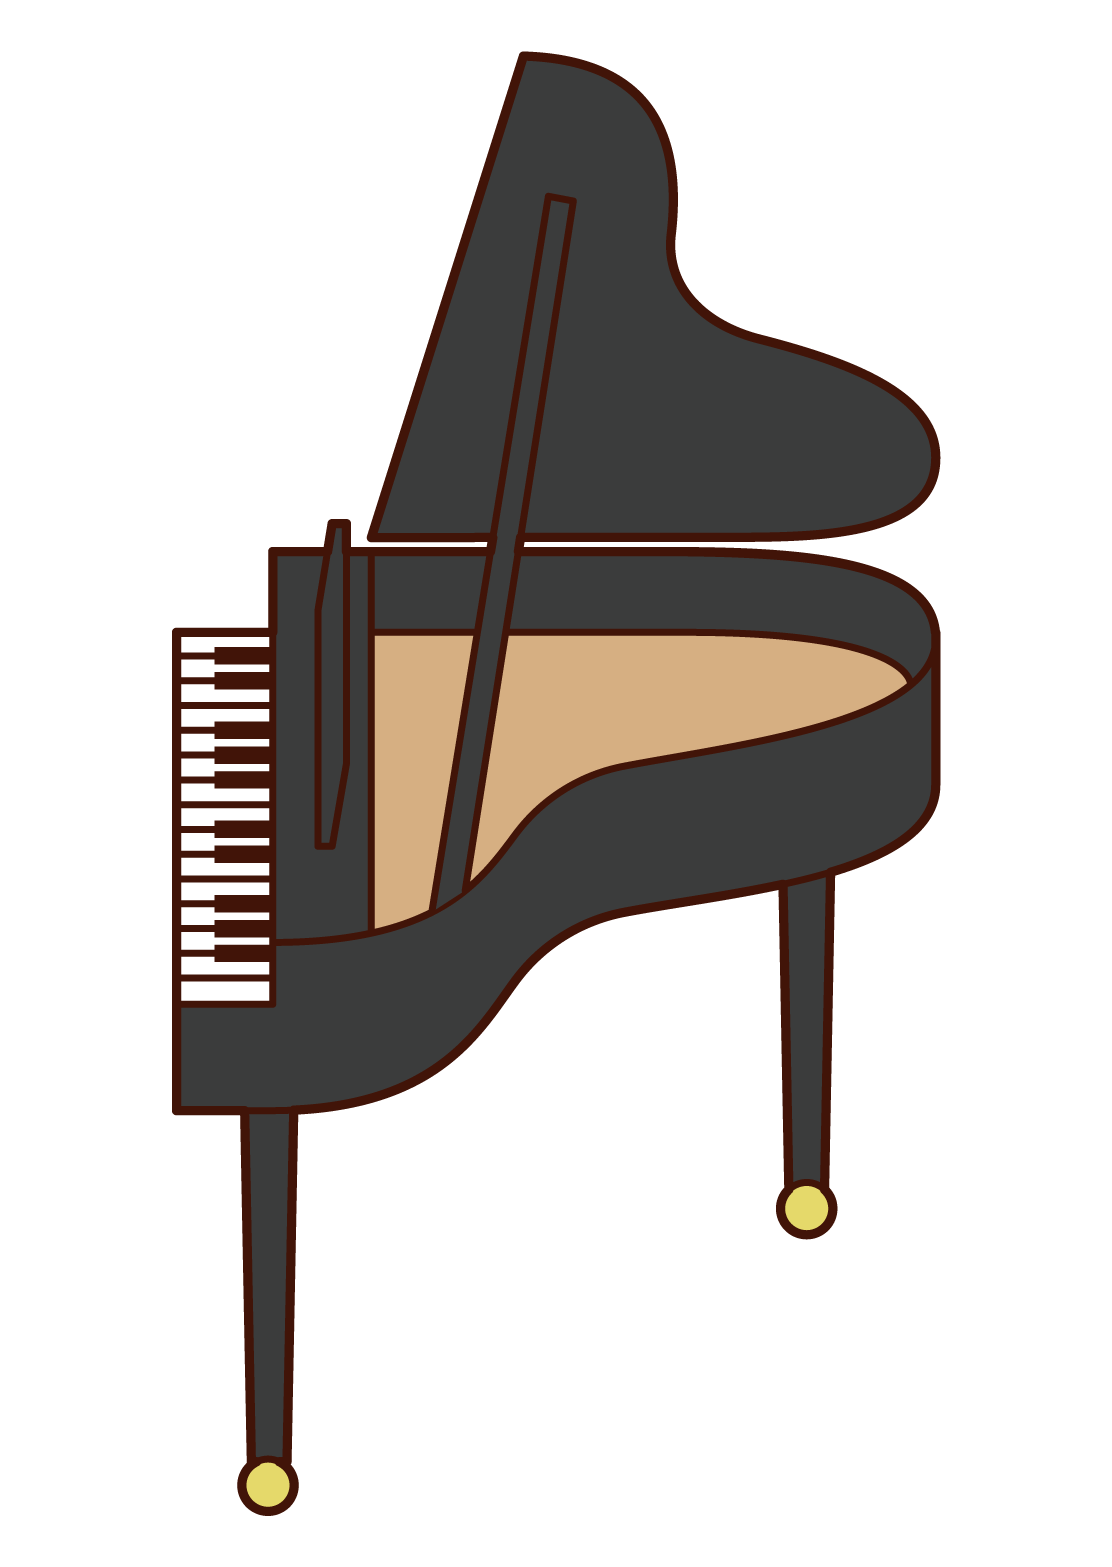 クラリネットを演奏する人 男性 のイラスト フリーイラスト素材 Kukukeke ククケケ